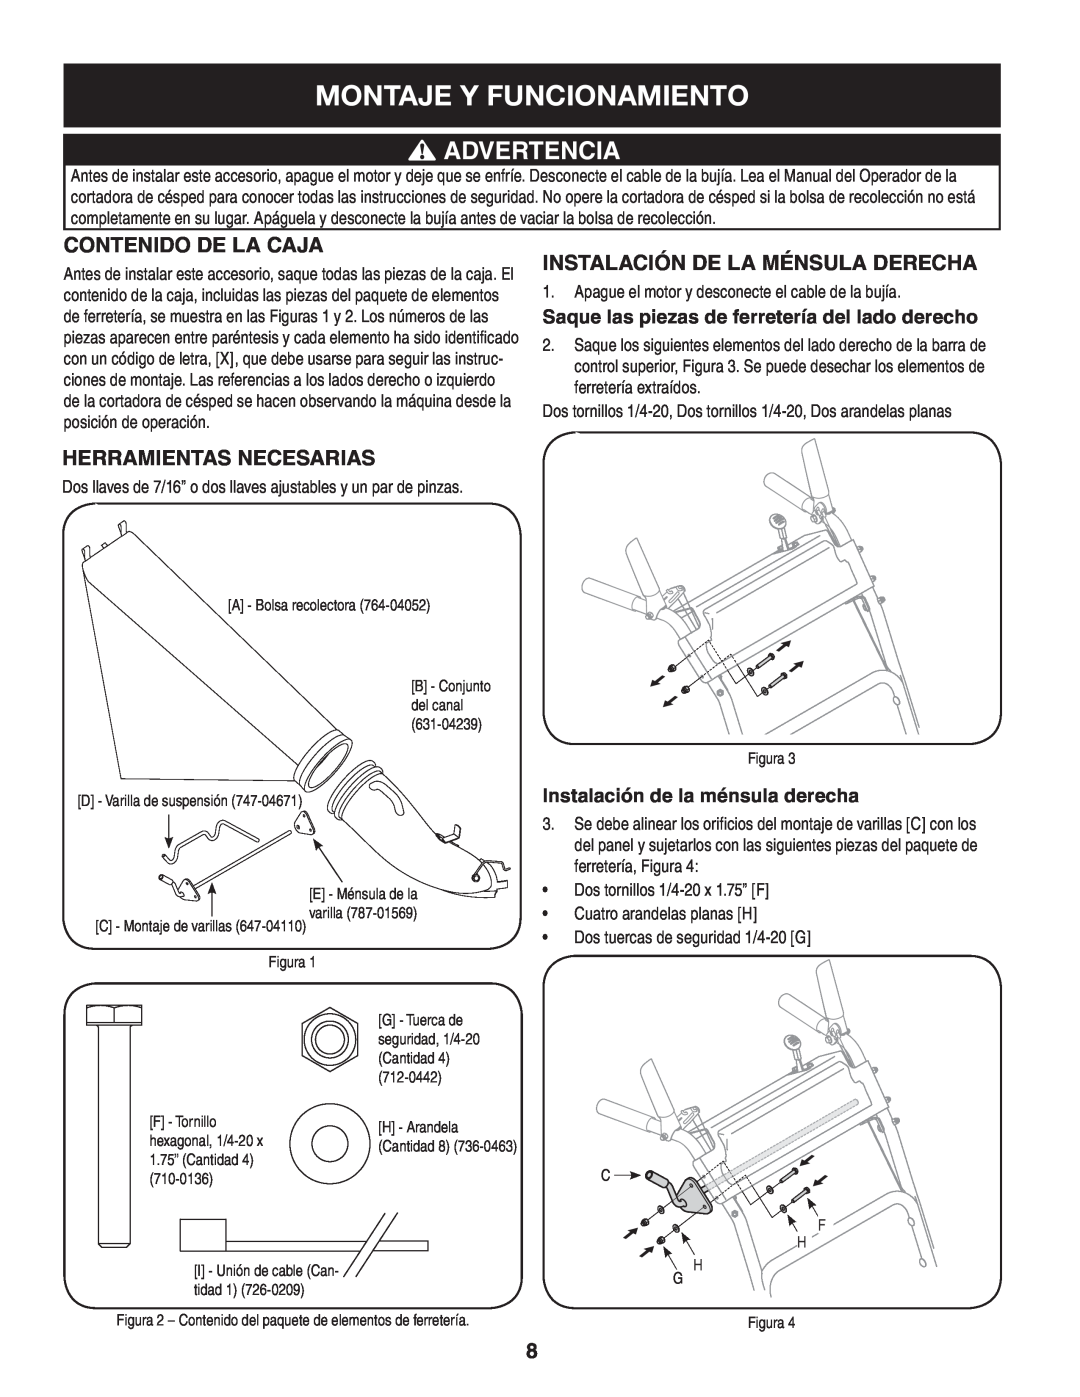 Sears 33731 manual Montaje Y Funcionamiento, Advertencia, Contenido De La Caja, Instalación De La Ménsula Derecha 